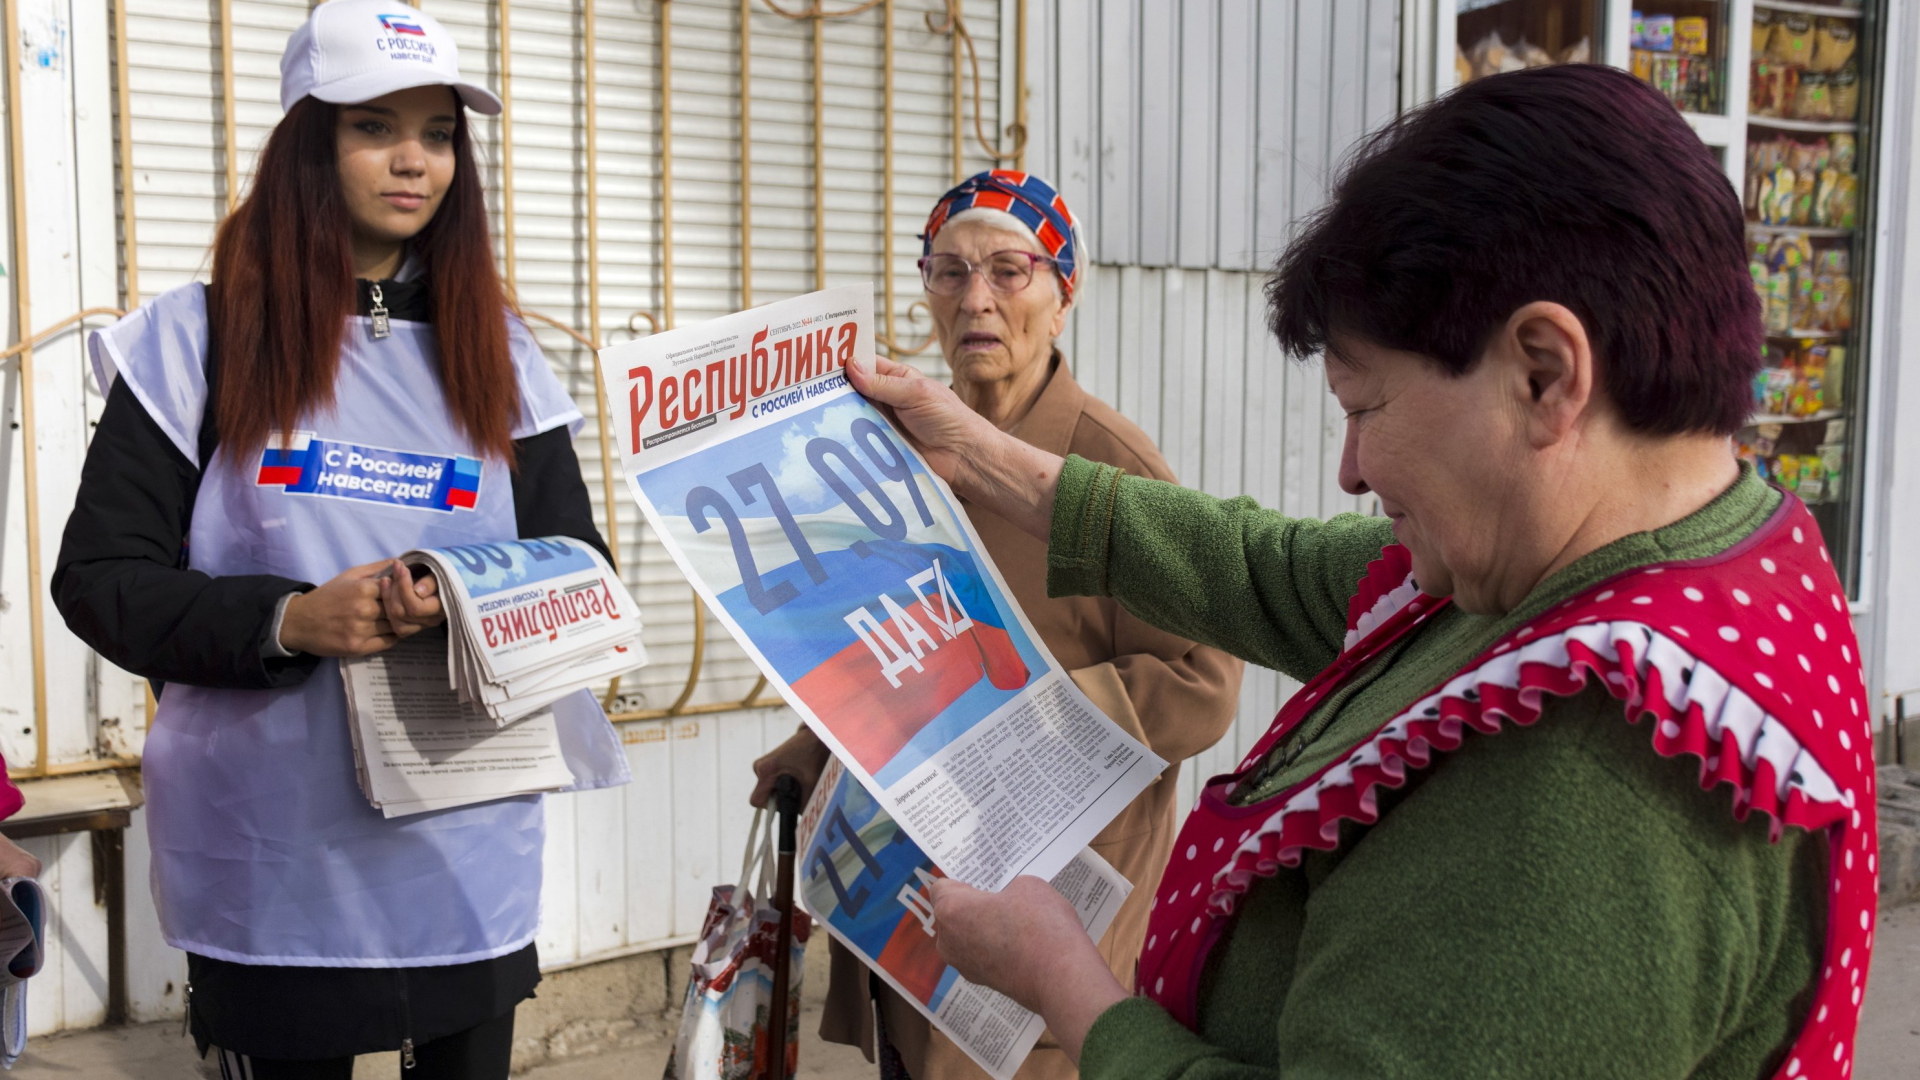 Wahlhelfer verteilen Informationsmaterial zu den "Referenden" in der Ostukraine | AP